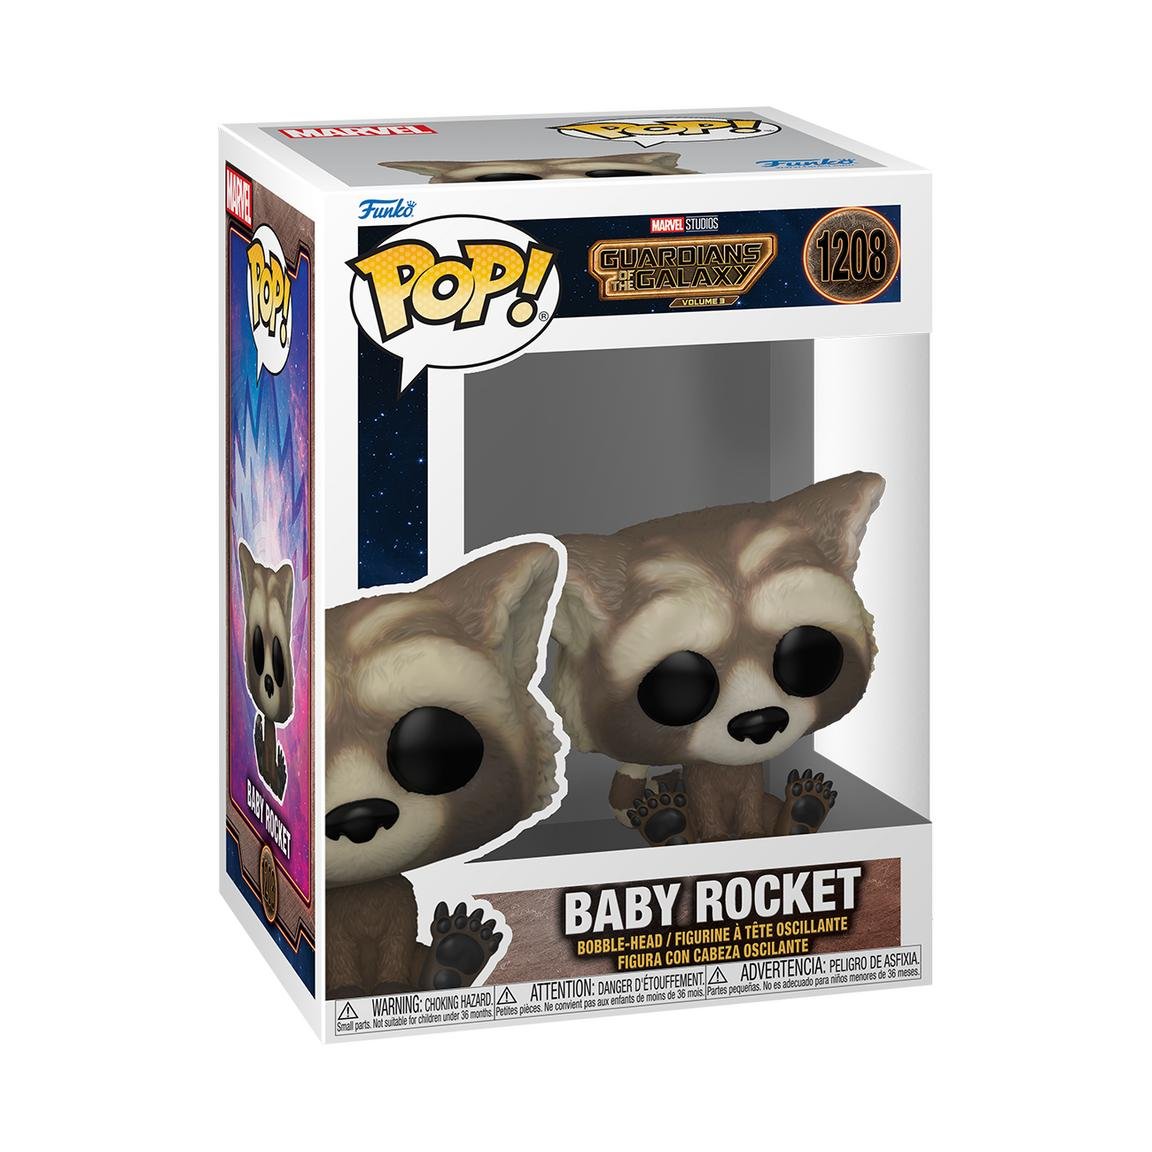 Funko POP! Marvel, figurka kolekcjonerska, Guardians of the Galaxy, Baby Rocket, 1208